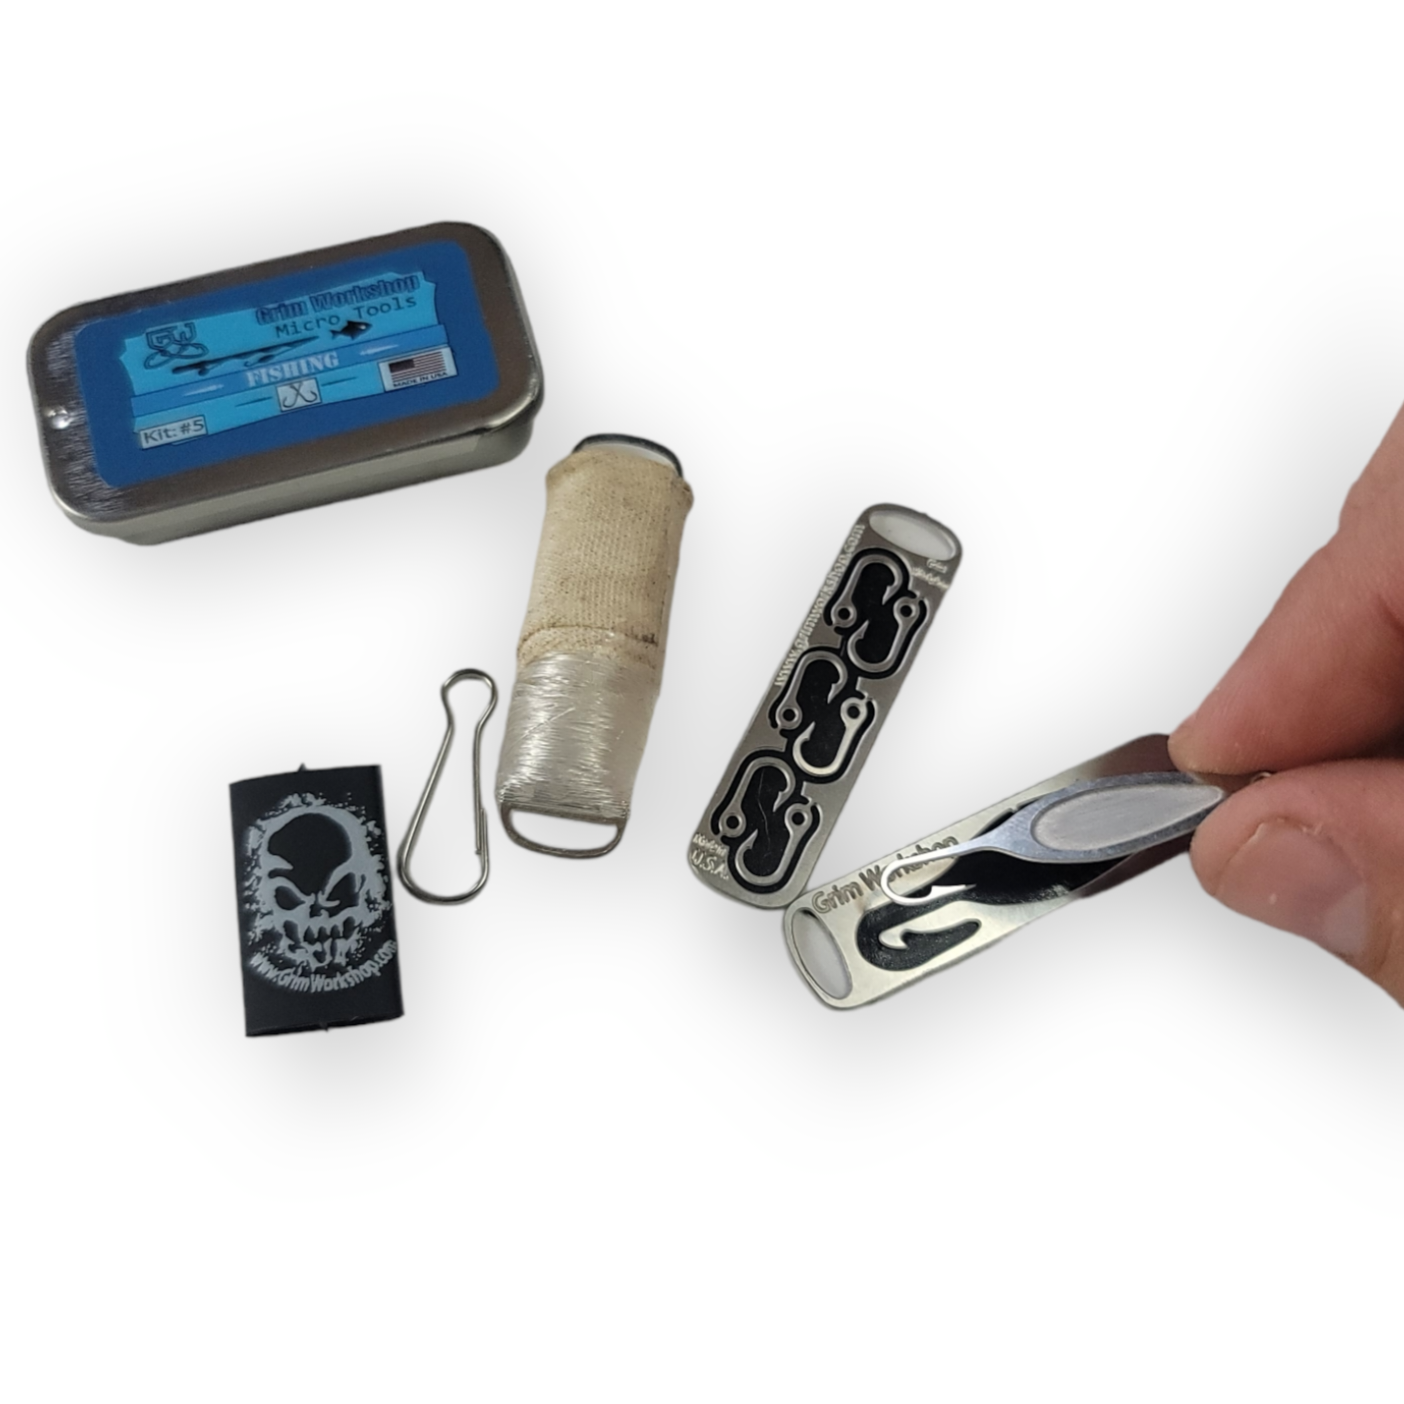 Micro Fishing Kit | Emergency Fishing Kit | Grim Workshop